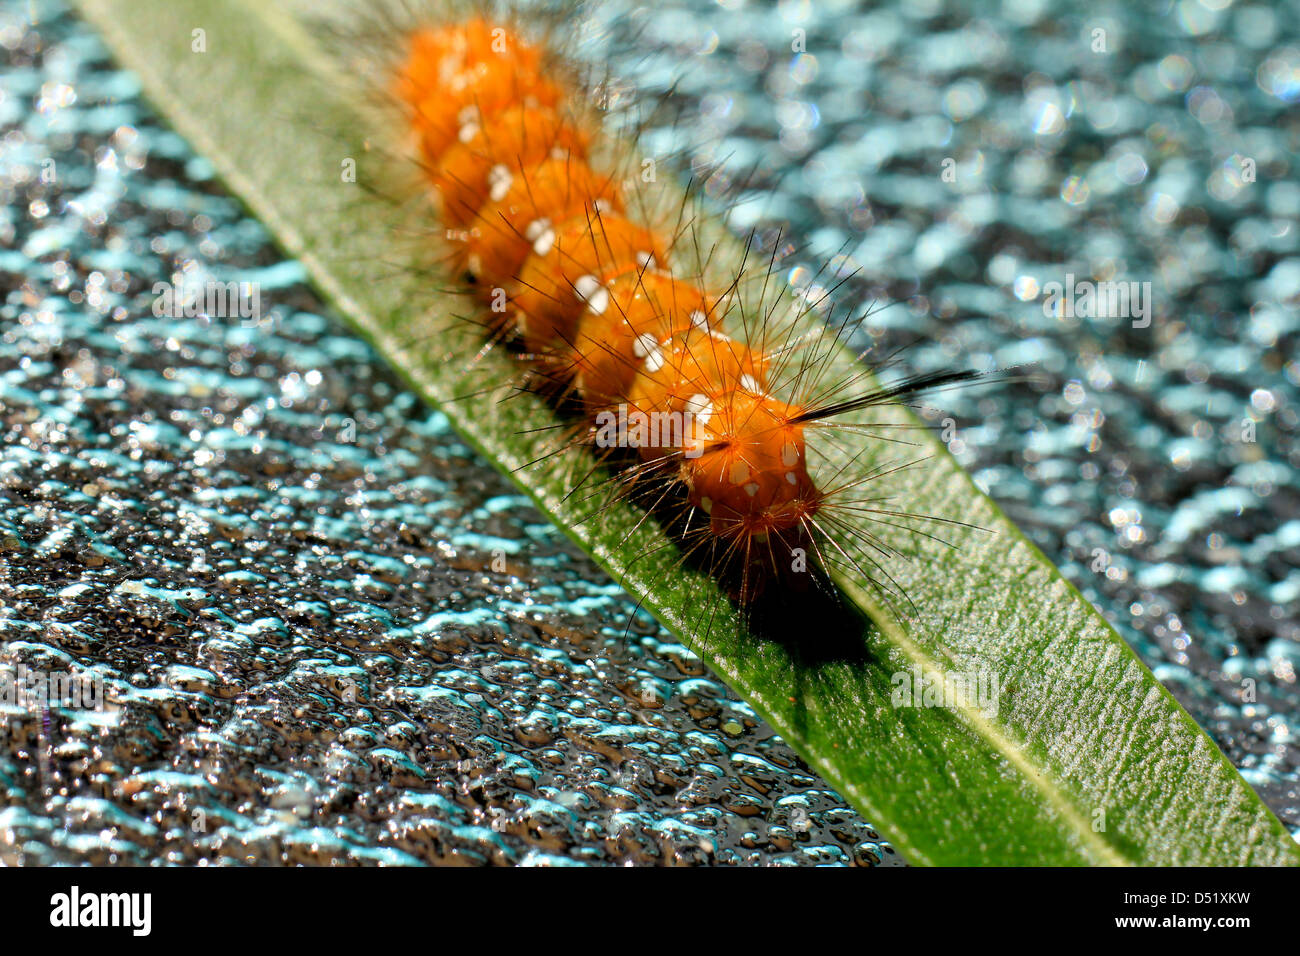 Caterpillar adelfa naranja con manchas blancas y pelos oscuros en una sola hoja de adelfa verde situado sobre una mesa de vidrio guijarro verde Foto de stock